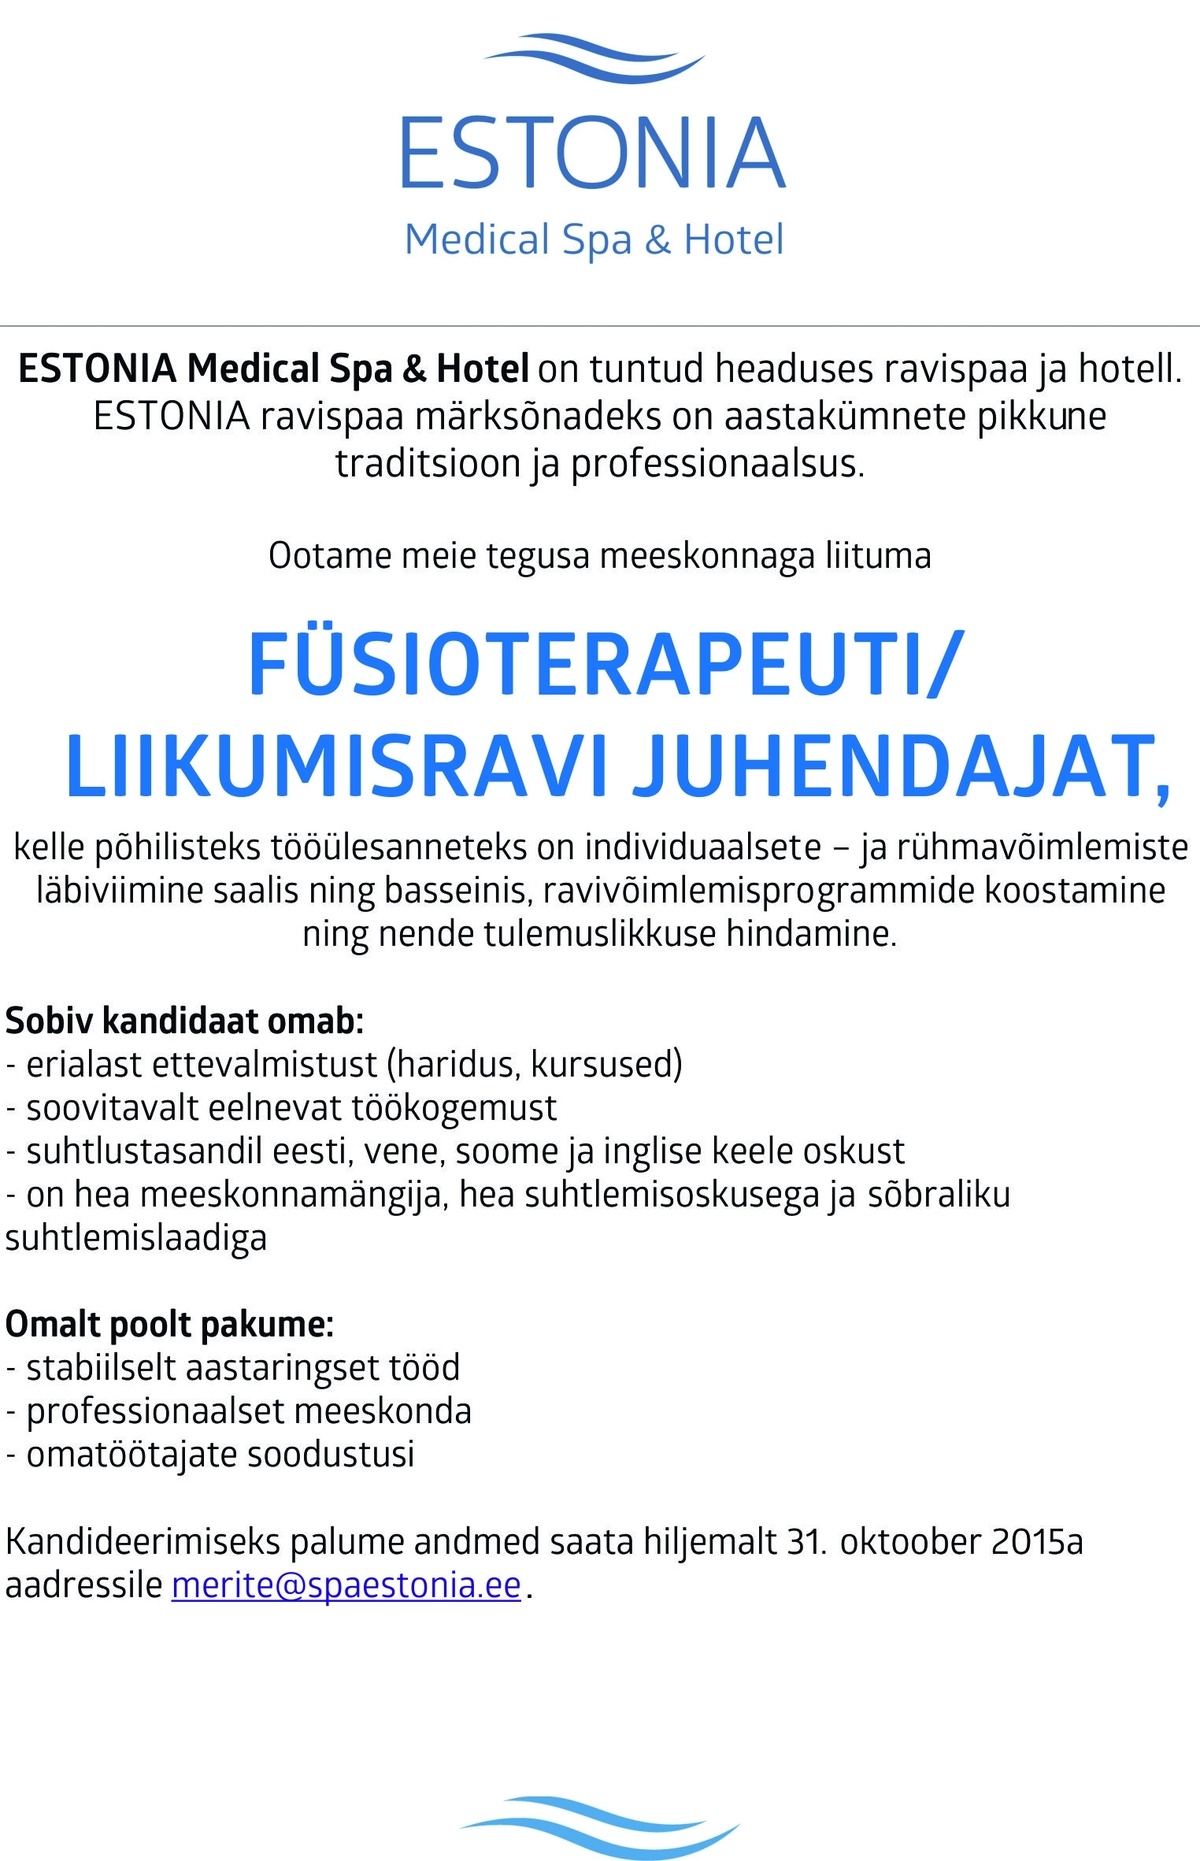 Estonia Spa Hotels AS Liikumisravi juhendaja/füsioterapeut